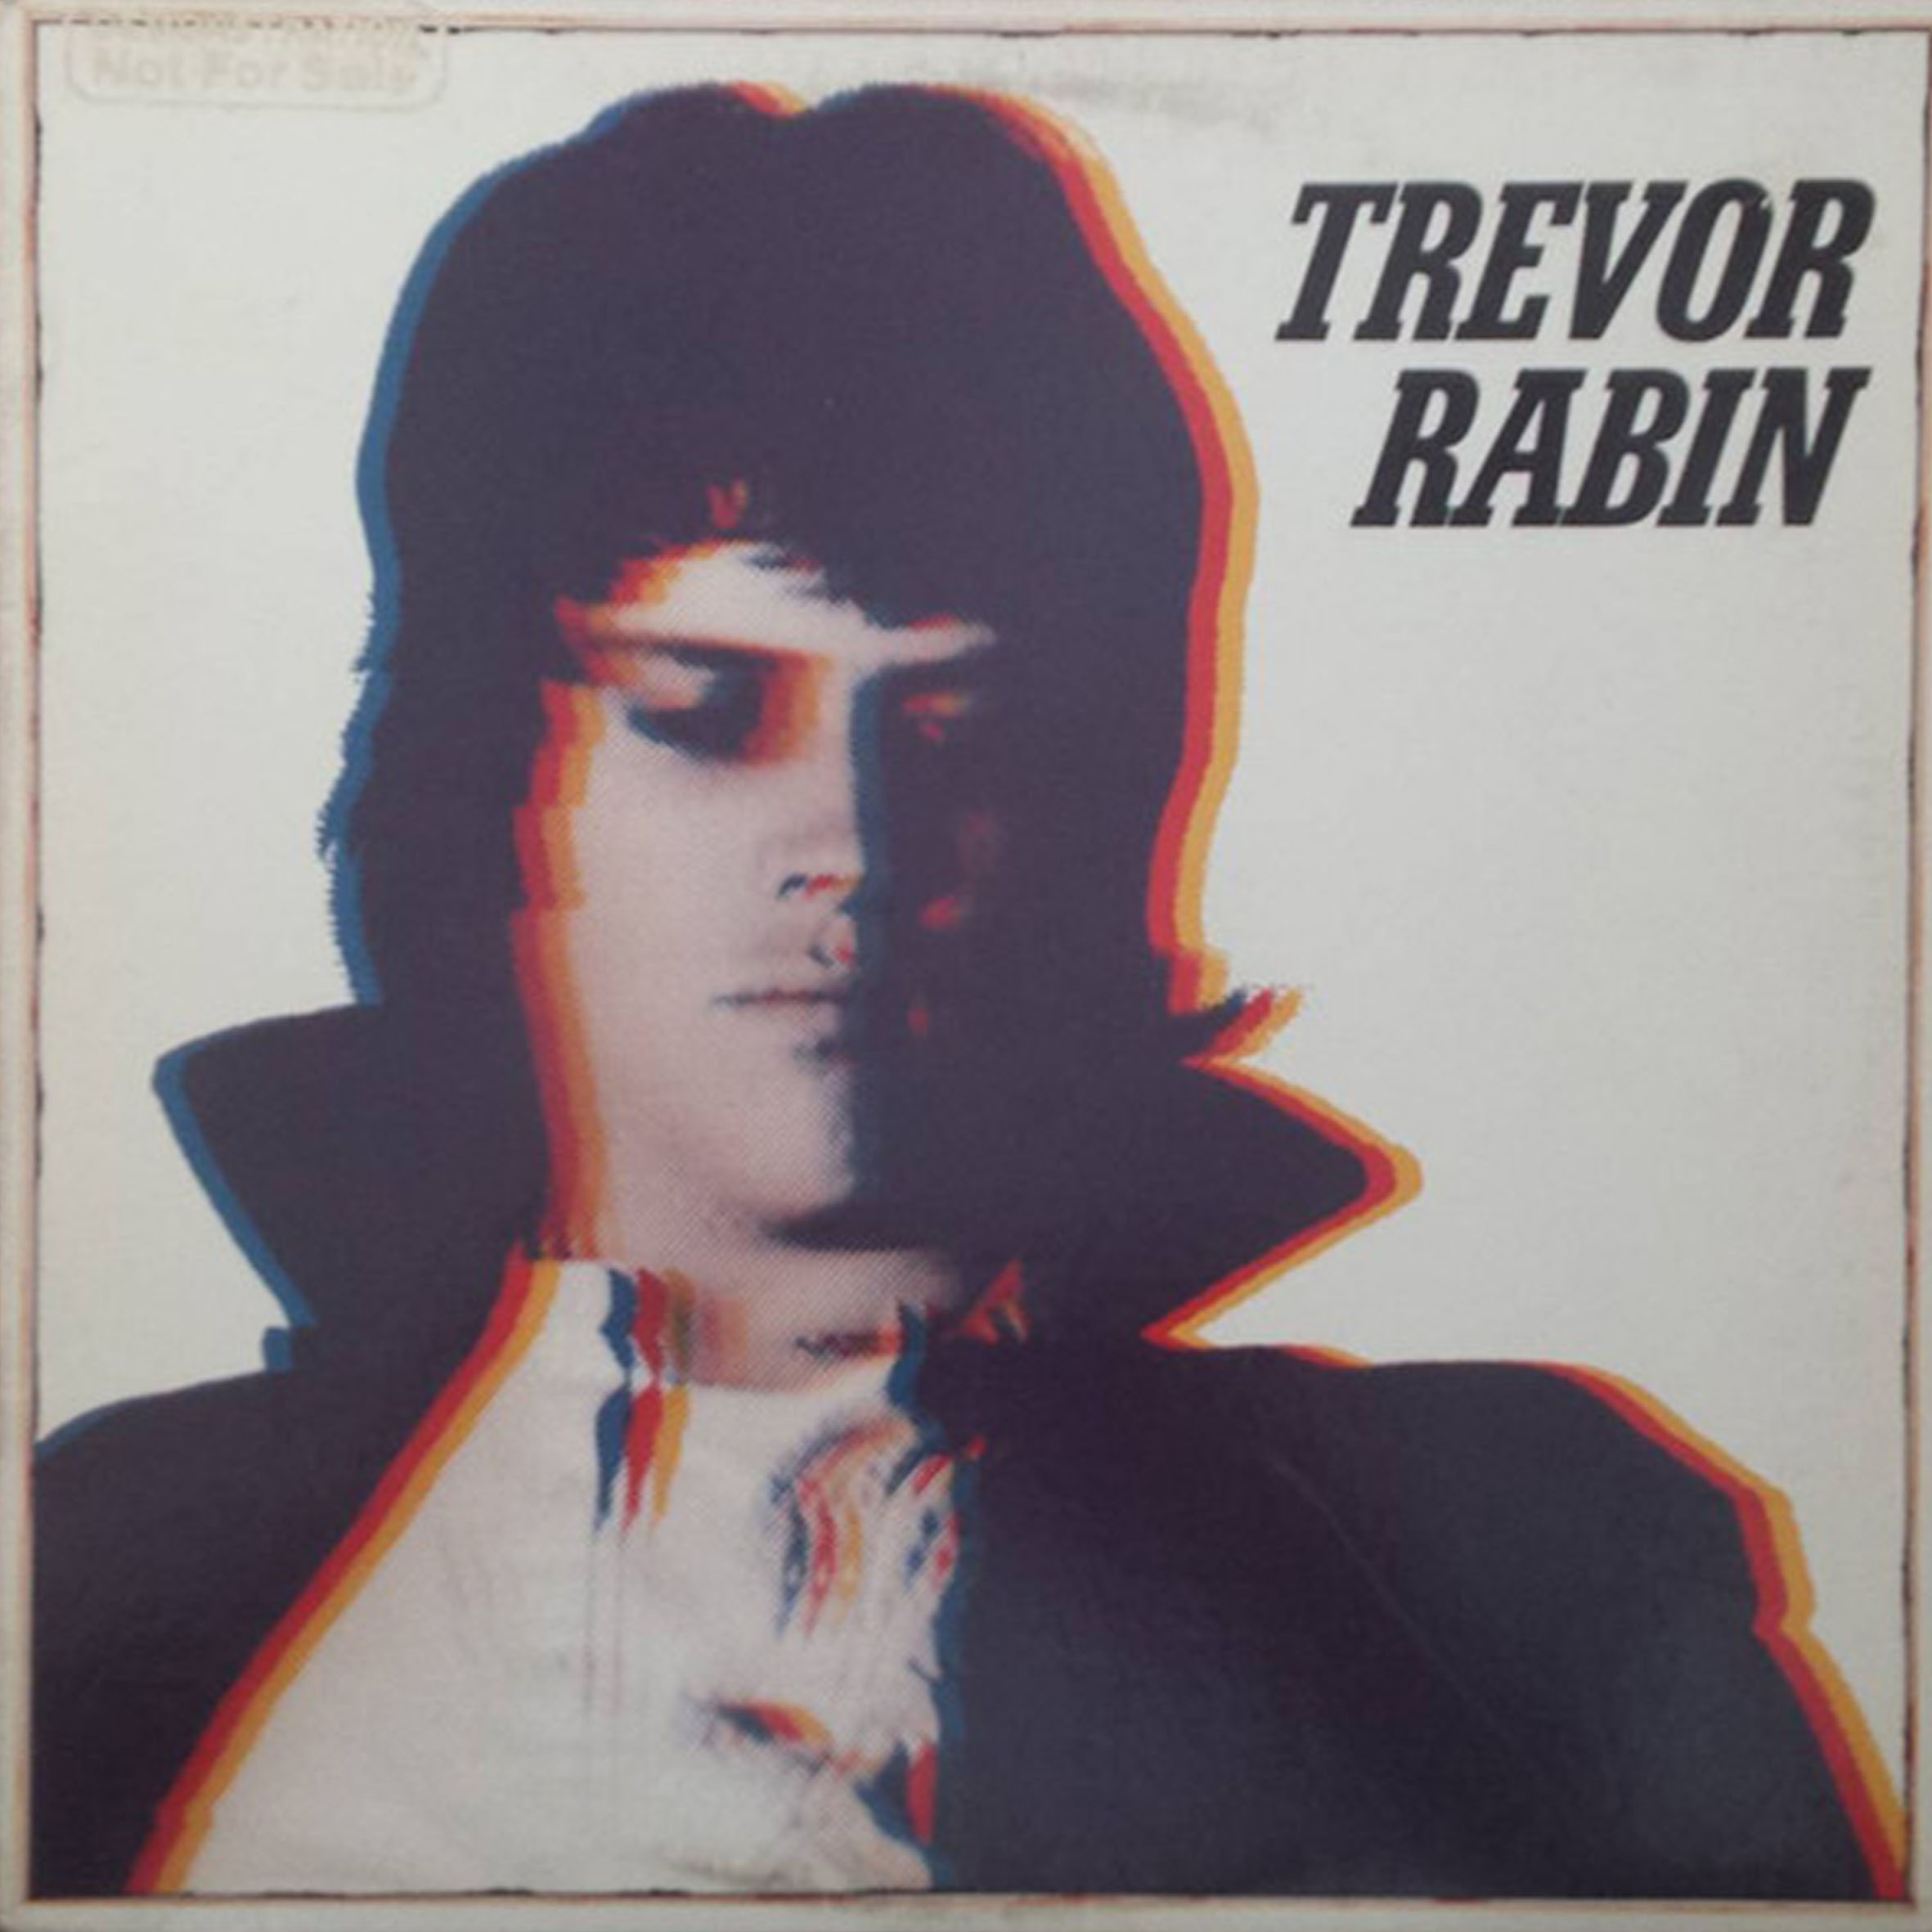 CD - Trevor Rabin - 1978 (Japan)